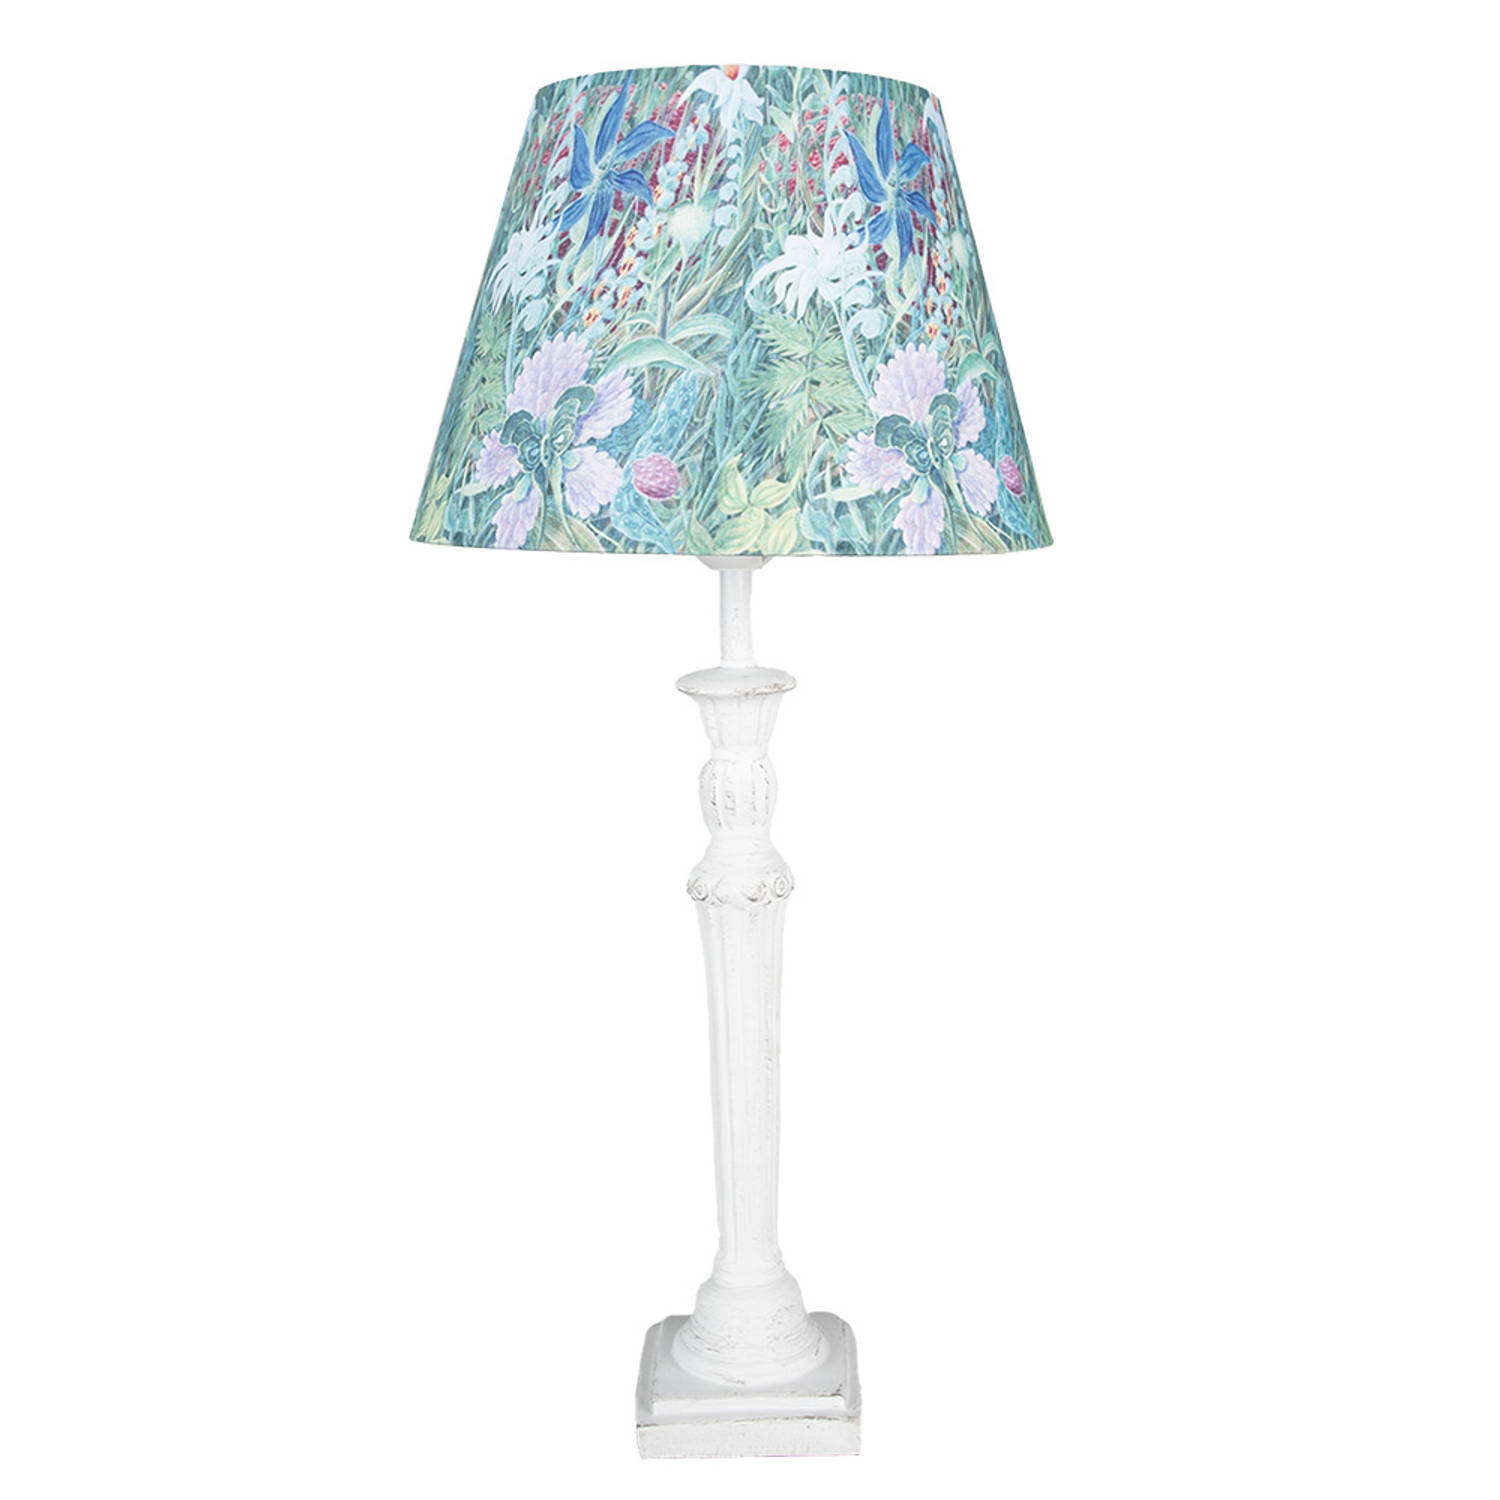 HAES DECO - Tafellamp - Shabby Chic - Bloemen bedrukt Lamp, formaat Ø 24x52 cm - Wit, Blauw / Groen - Bureaulamp, Sfeerlamp, Nachtlampje